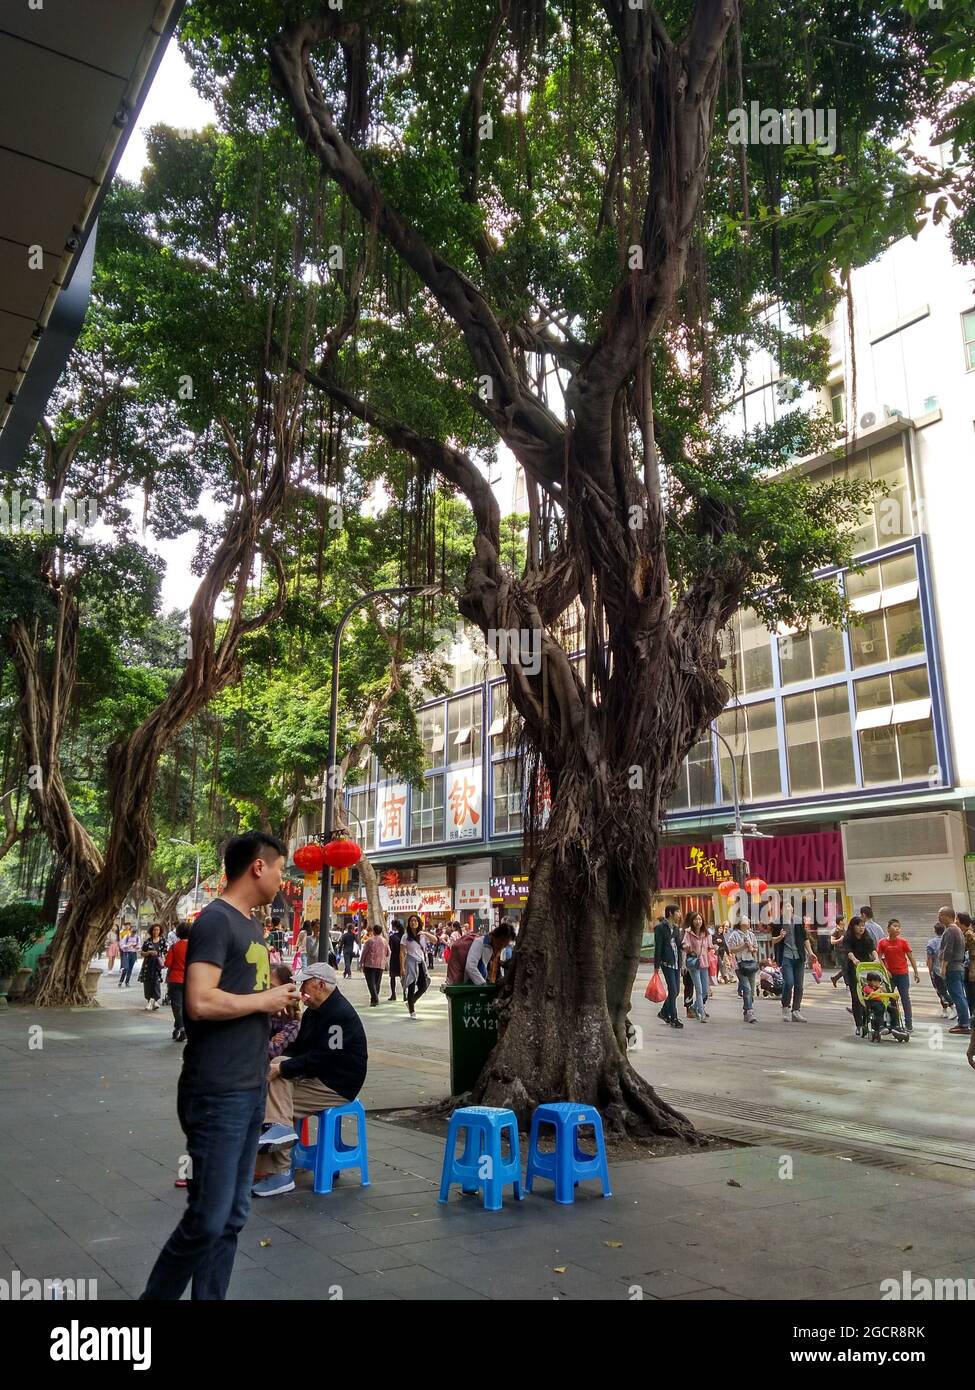 Un Chinois qui attend devant le restaurant vietnamien Tiger Prawn sur la route de Beijing à Guangzhou avec un arbre ancien et des tonnes de touristes Banque D'Images